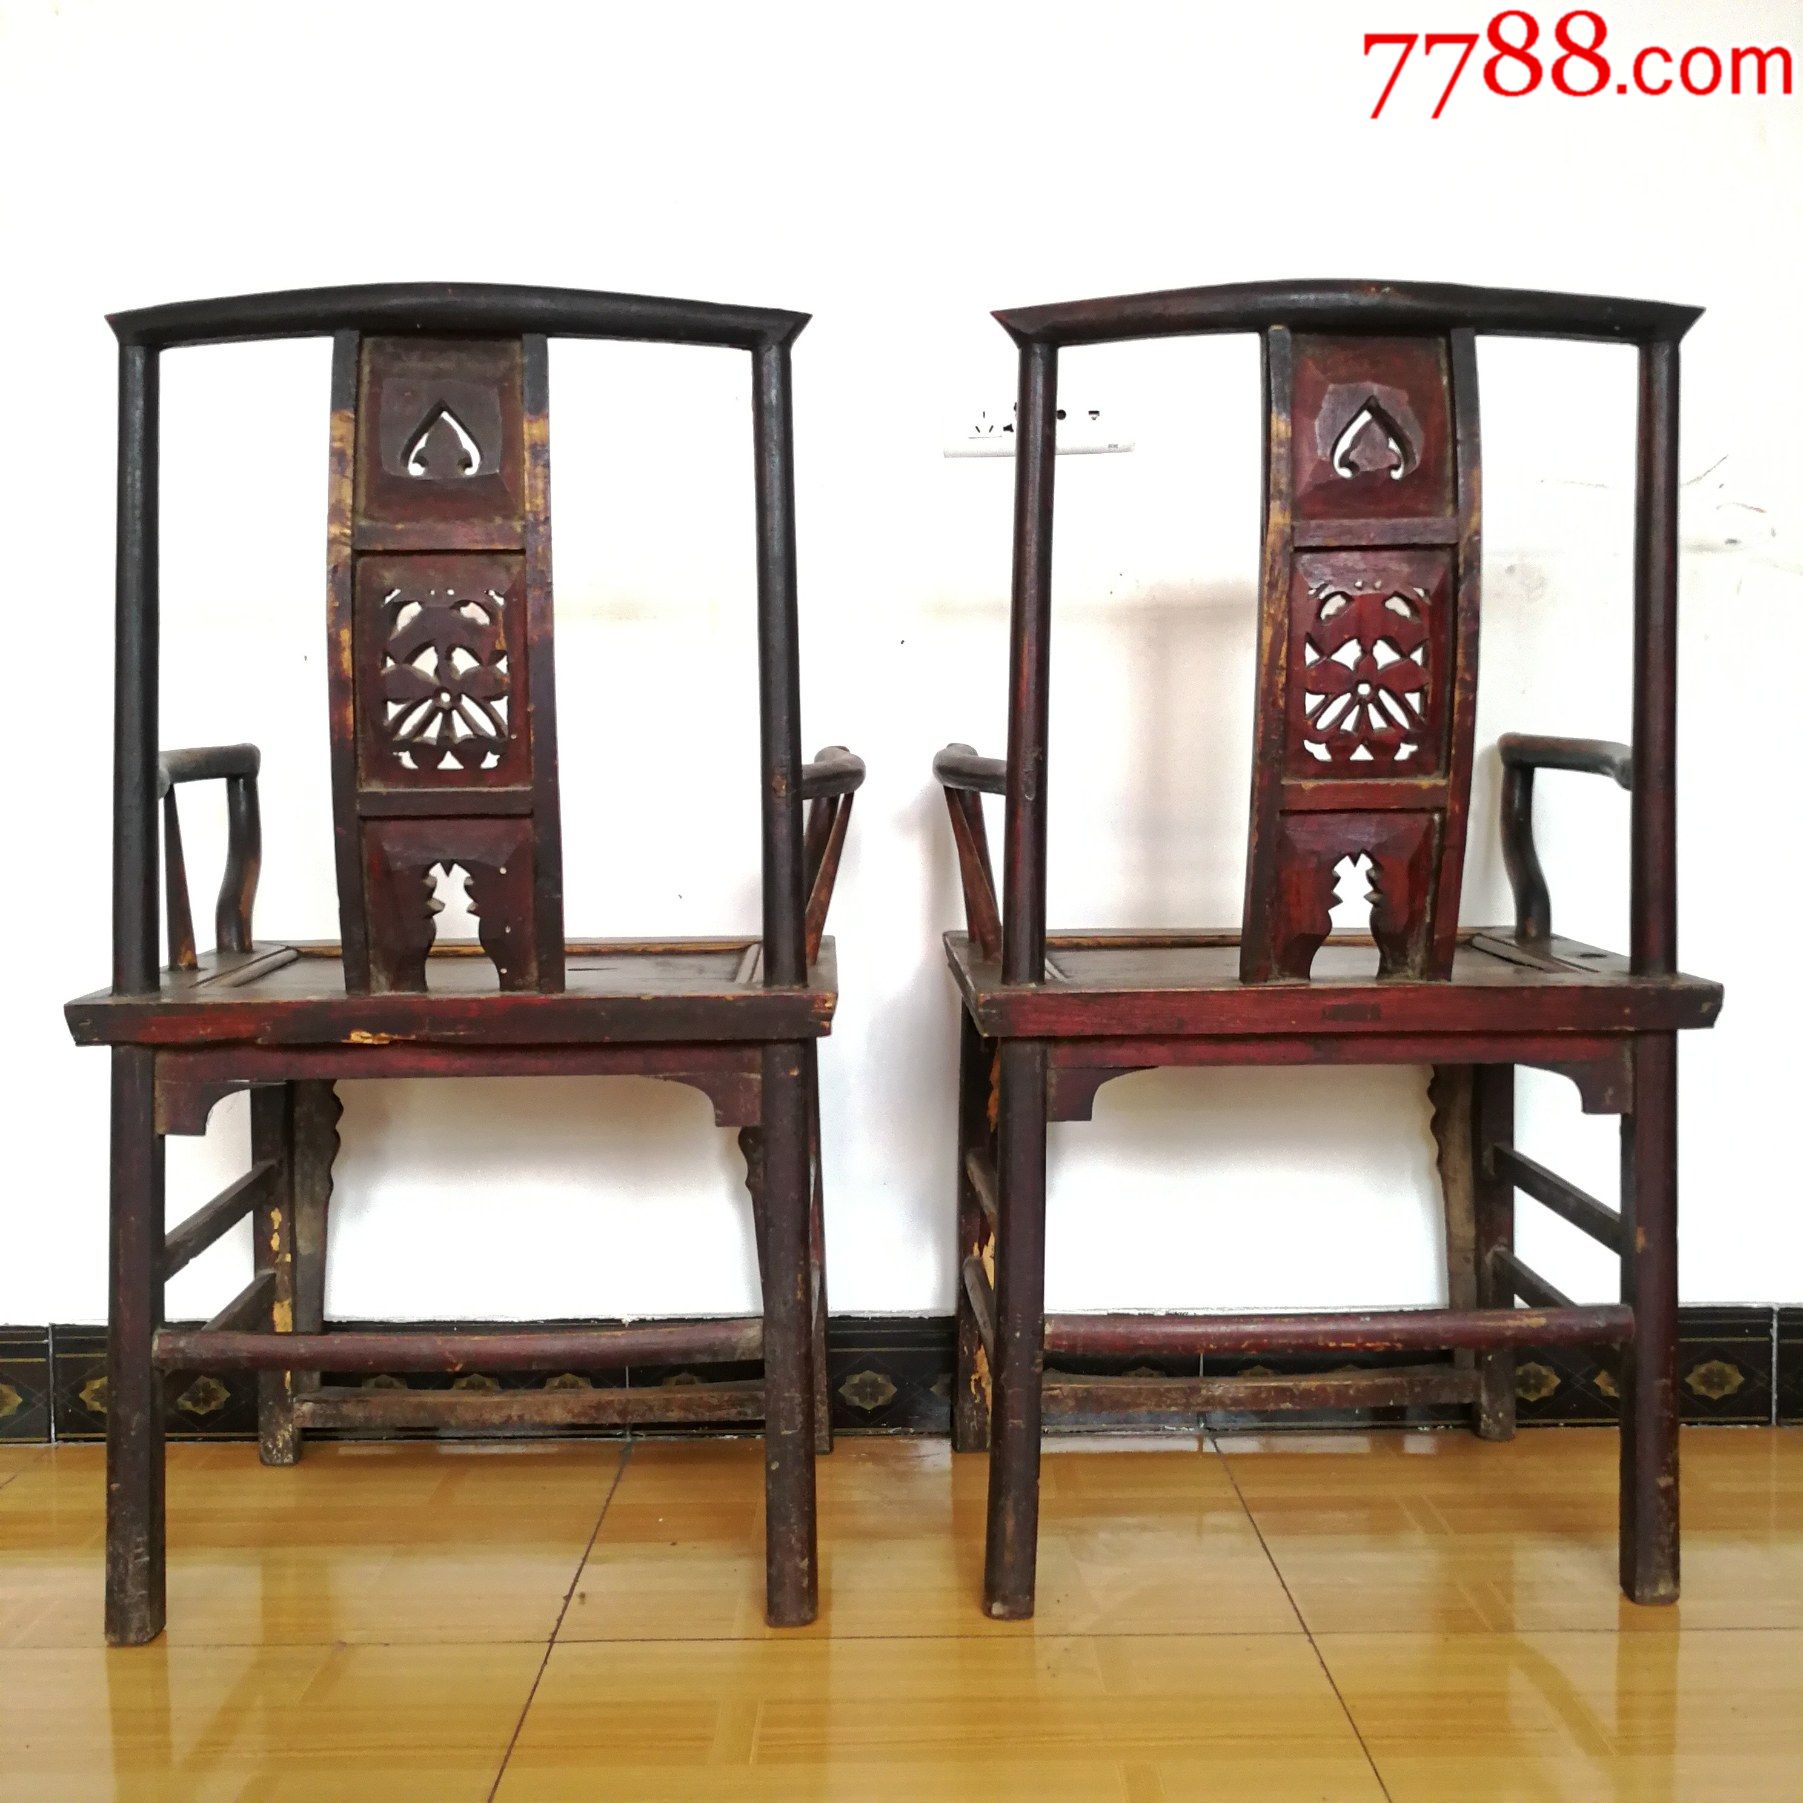 清晚期老榆木官帽椅子中式老椅子古玩古董家具太师椅靠背椅扶手椅